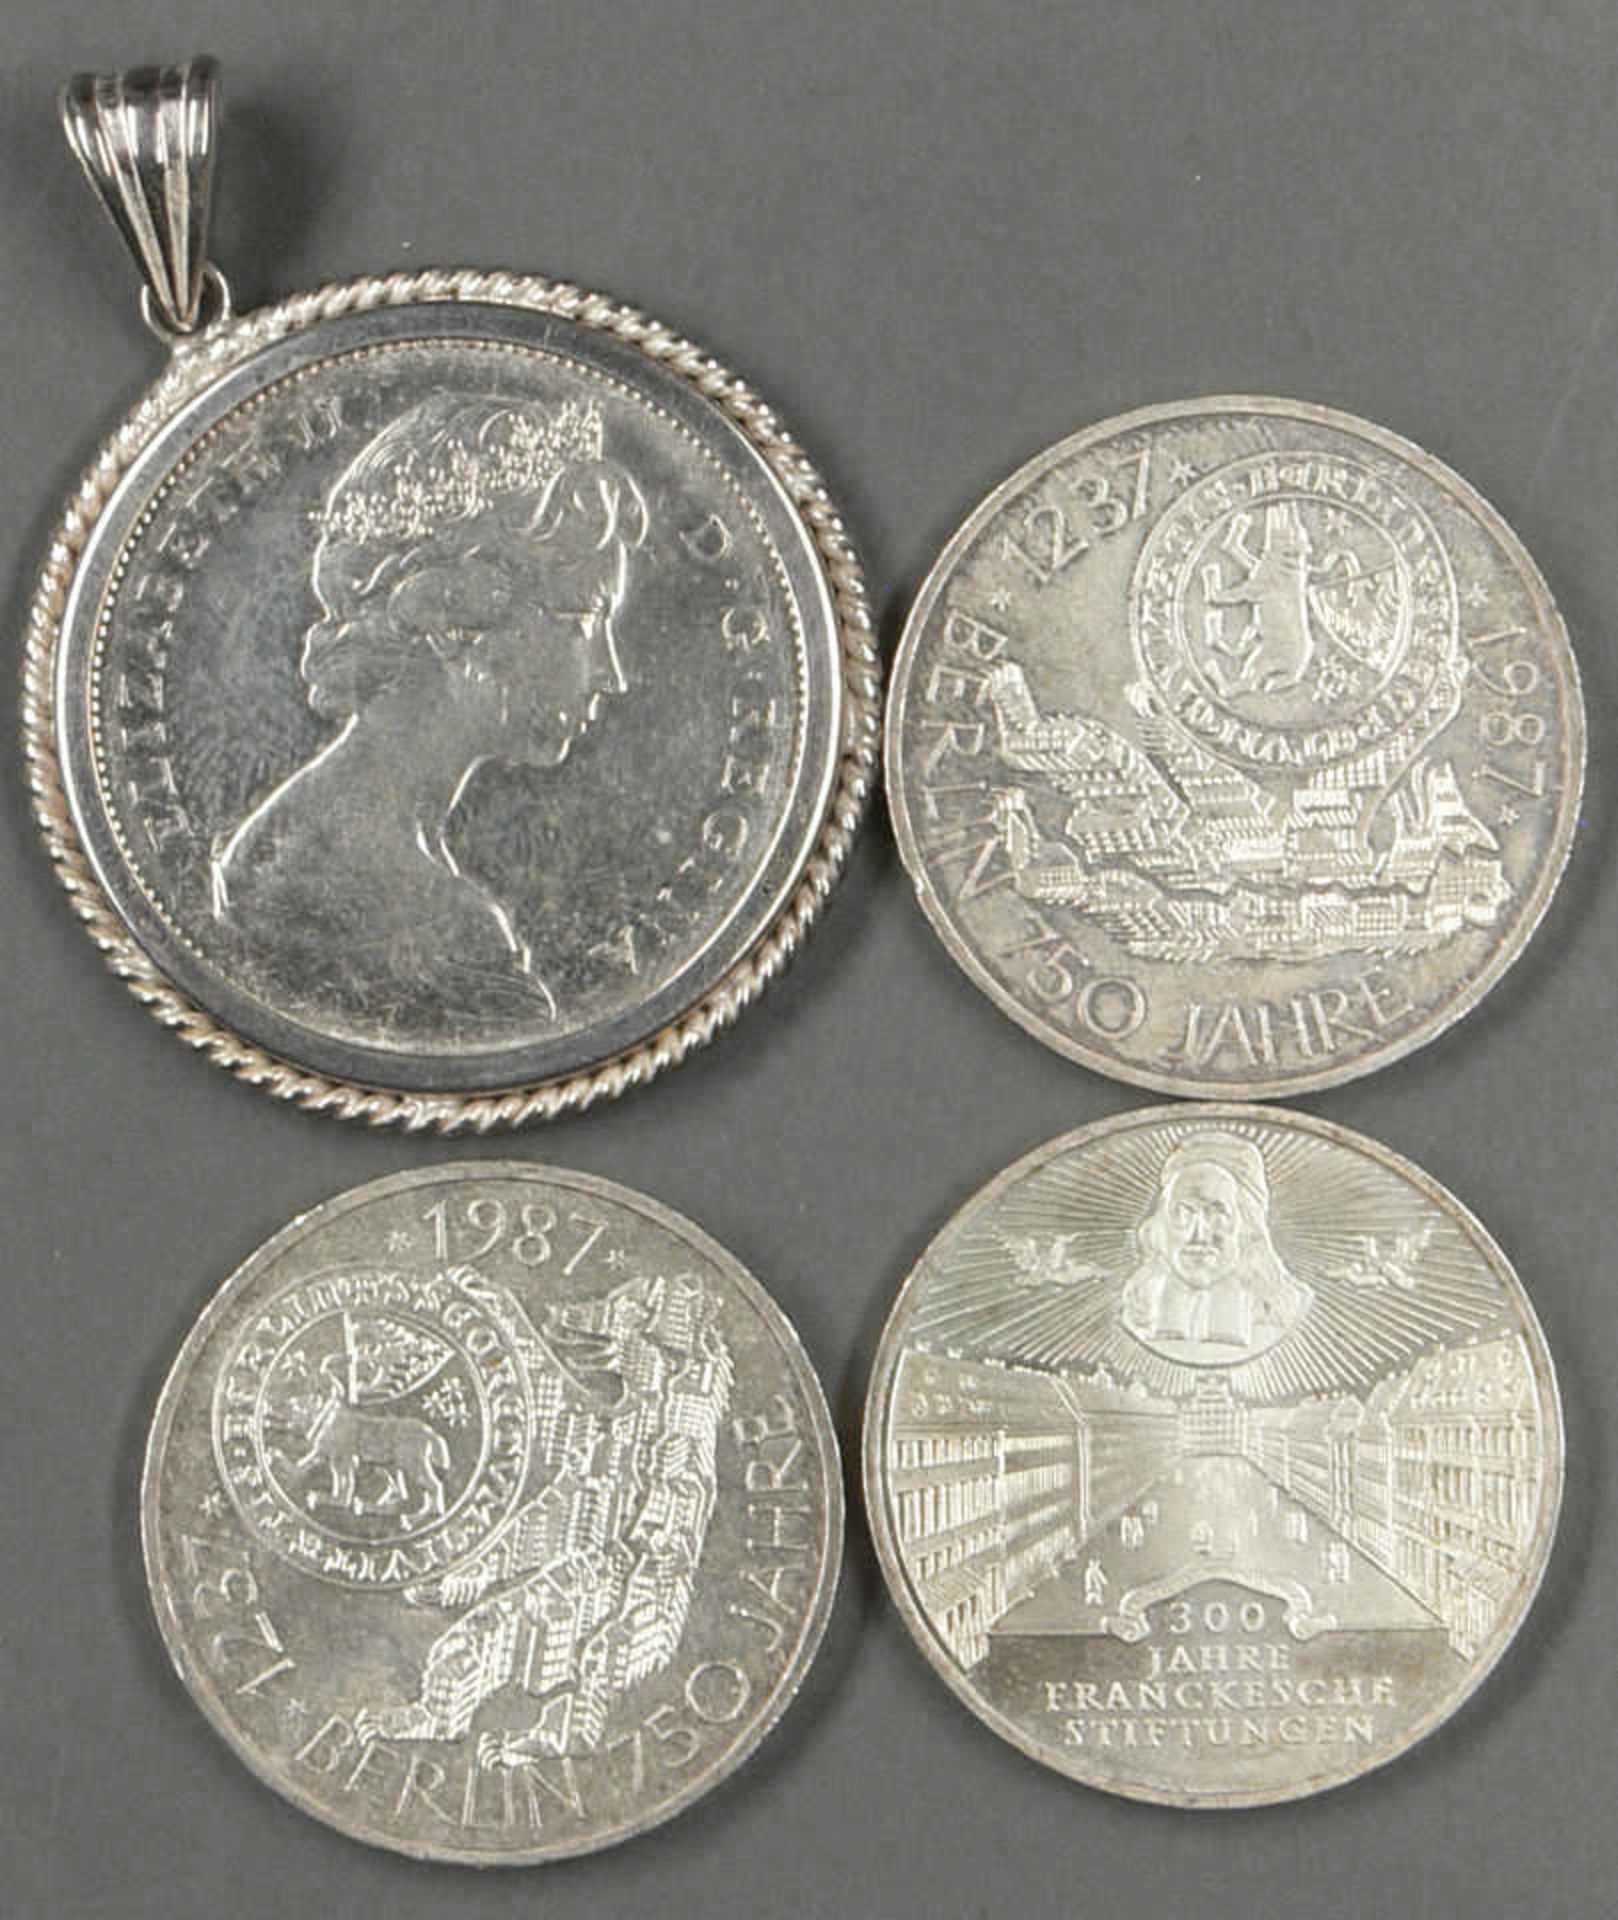 Kleines Münzlot, bestehend aus 3 x 10.- DM - Münzen, sowie 1 x Kanada - Dollar von 1966, mit